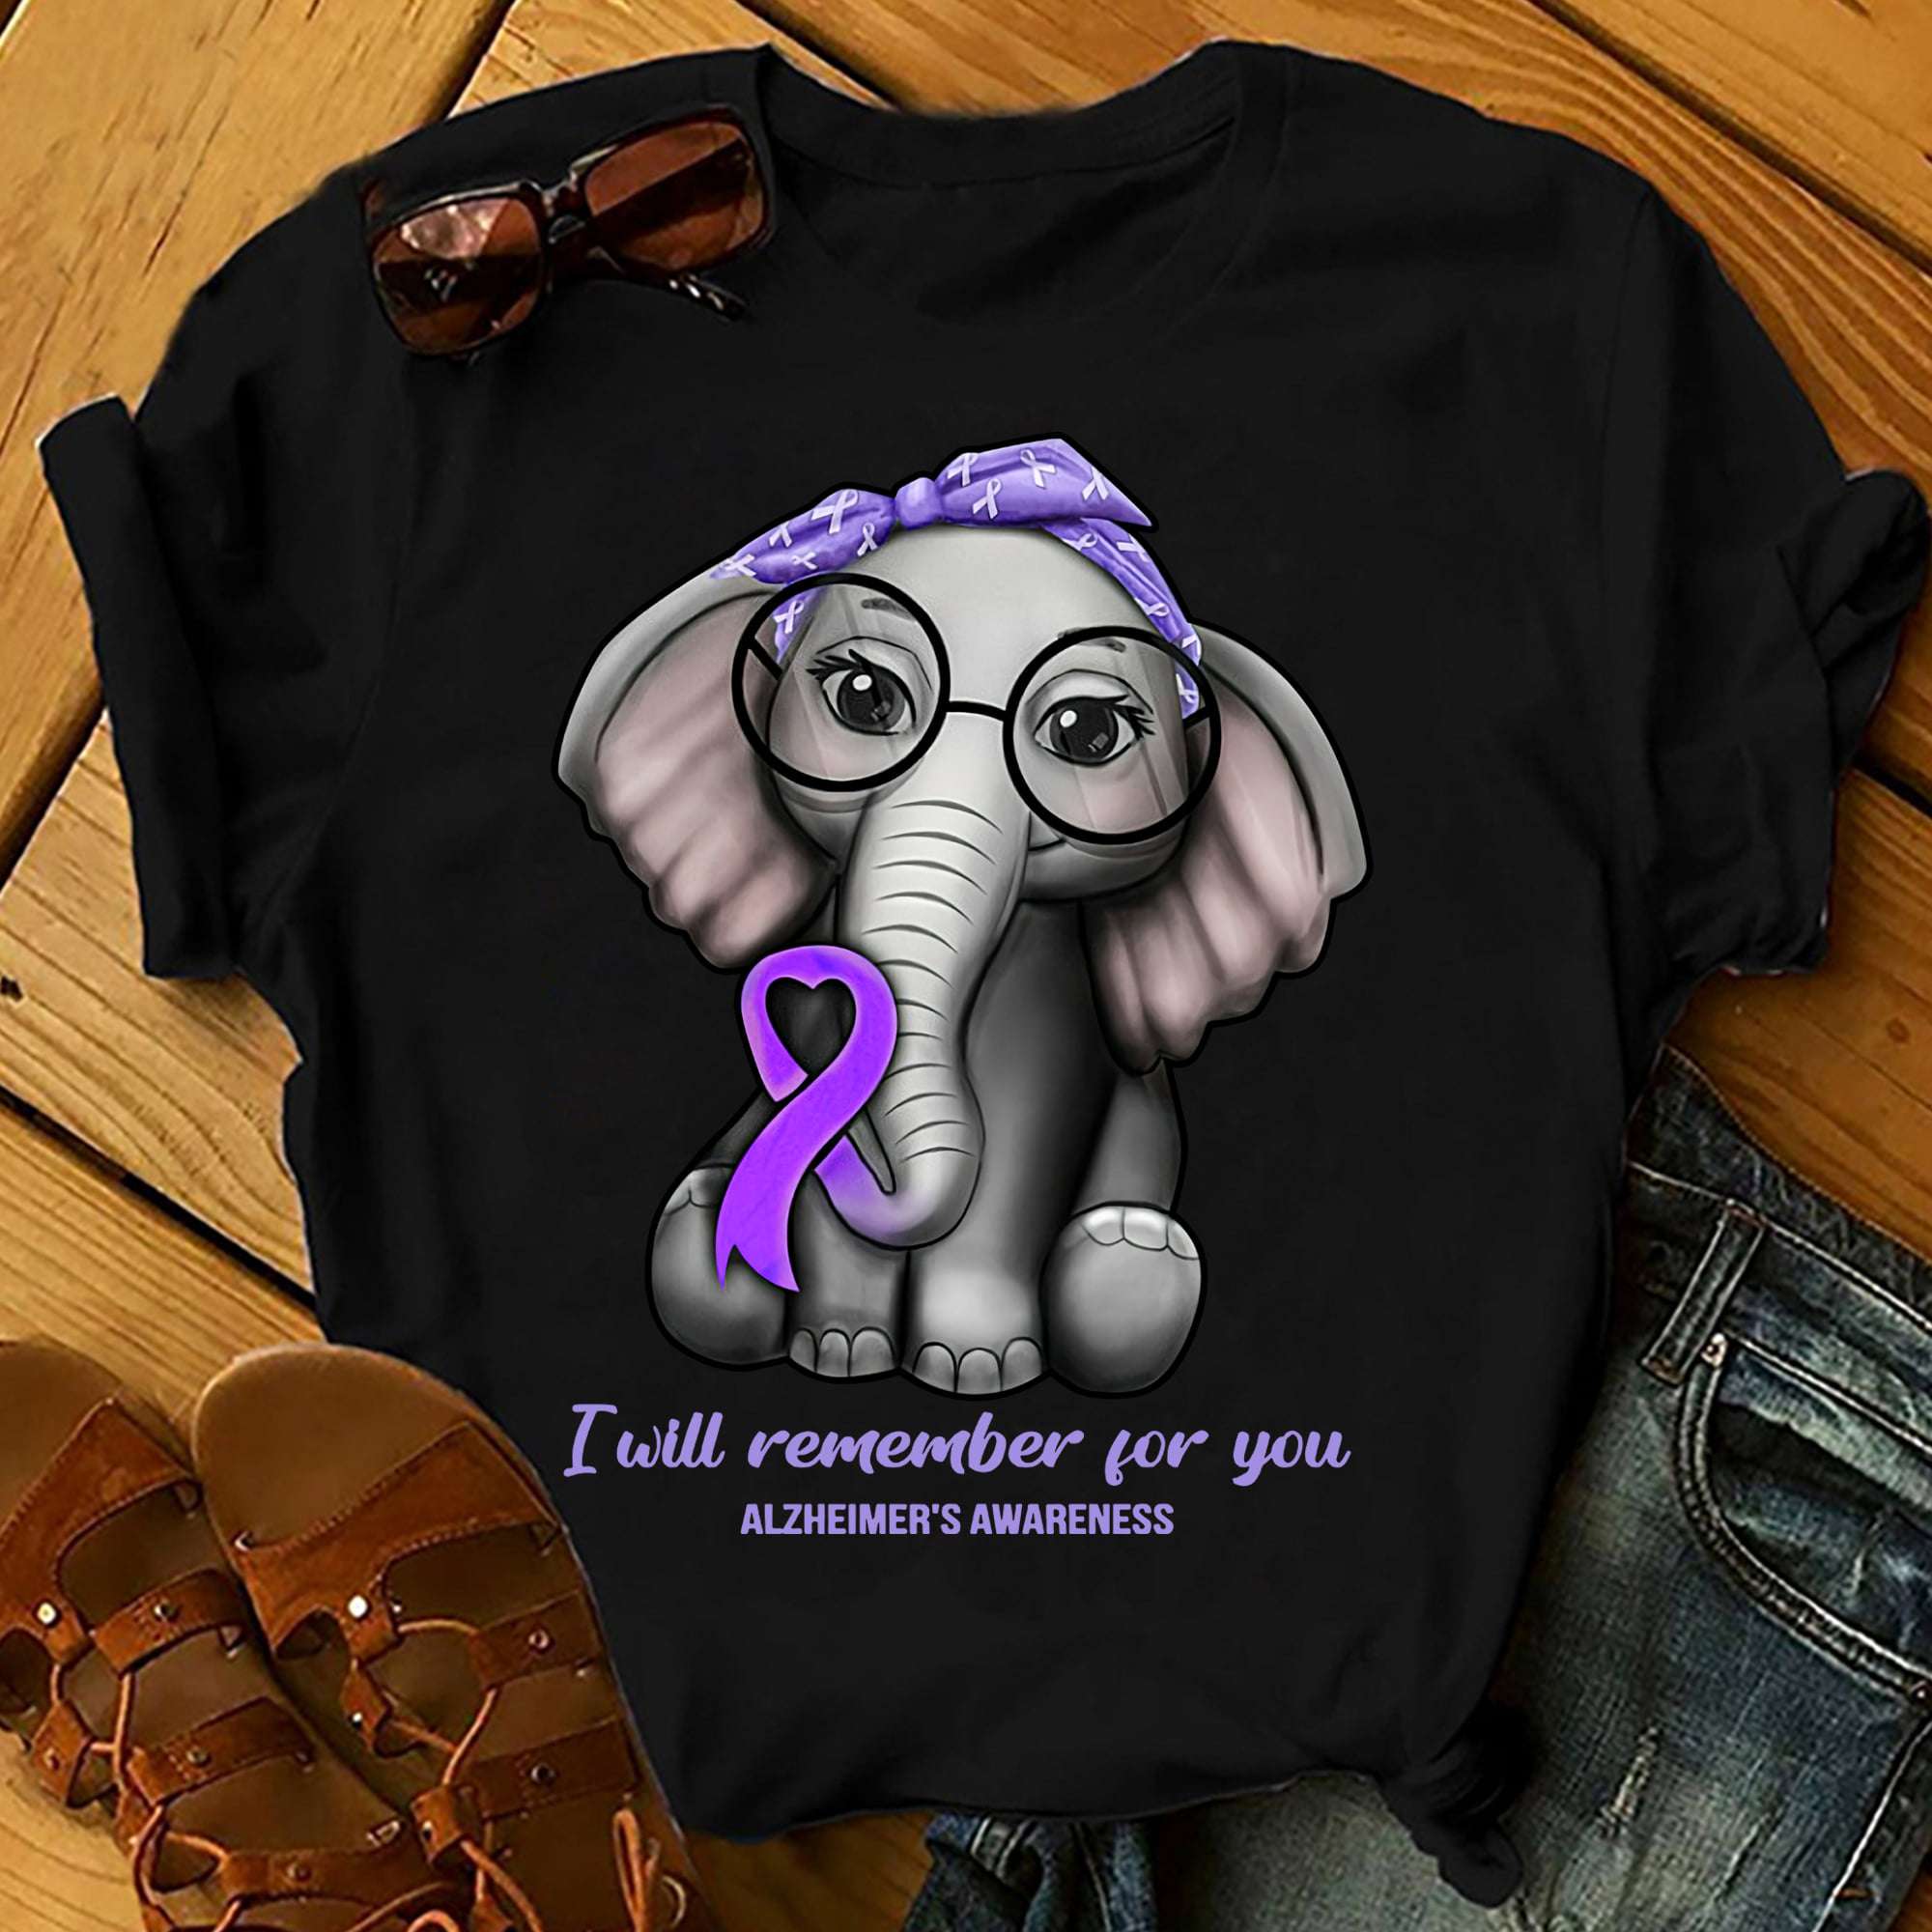 I will remember for you - Alzheimer's awareness, elephant alzheimer